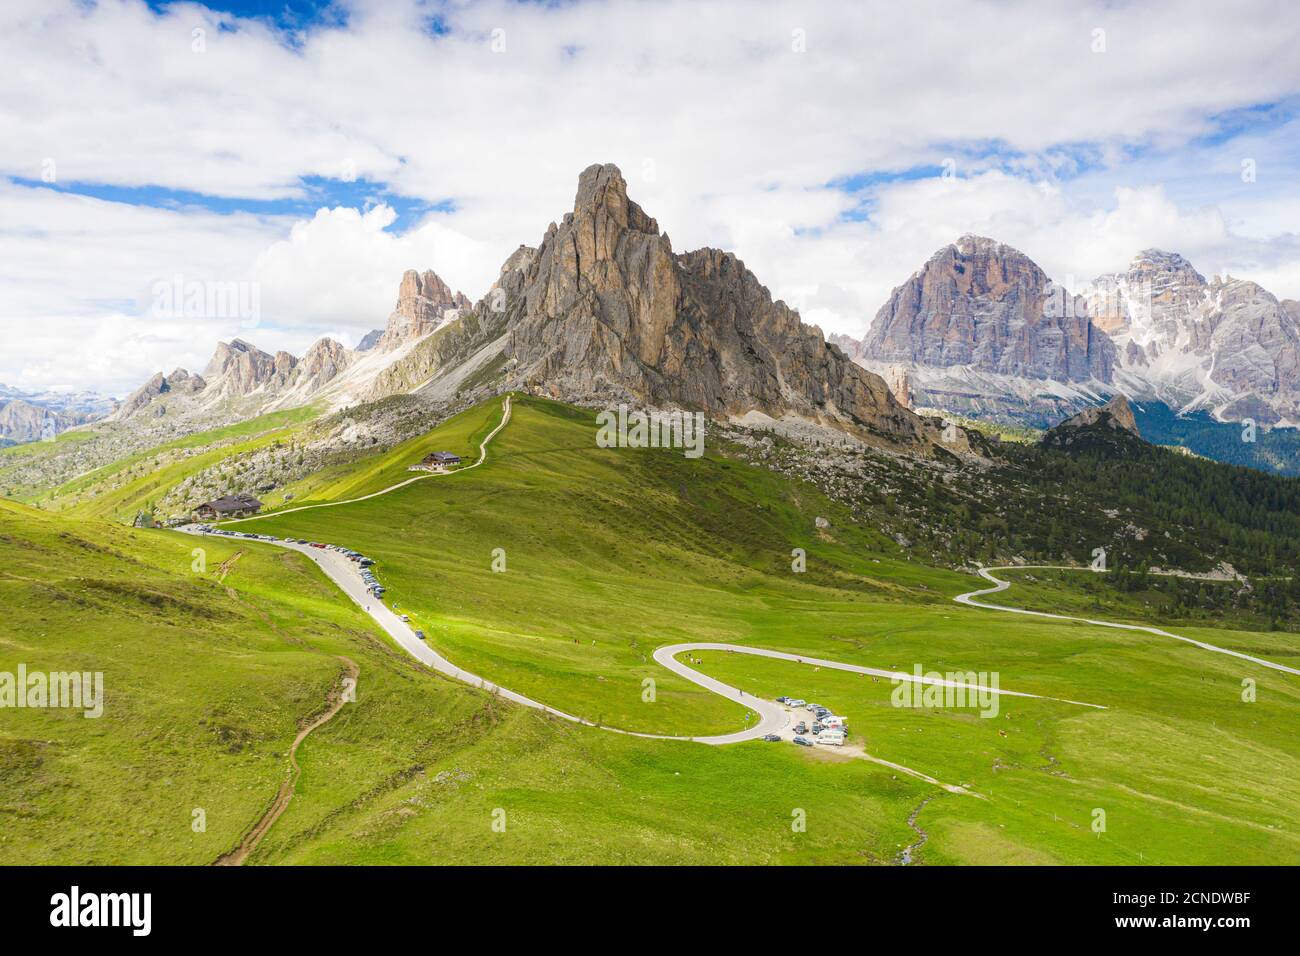 Route sinueuse du col de Giau dans le paysage vert avec les montagnes de Ra Gusela et Tofane en arrière-plan, Dolomites, Vénétie, Italie, Europe Banque D'Images